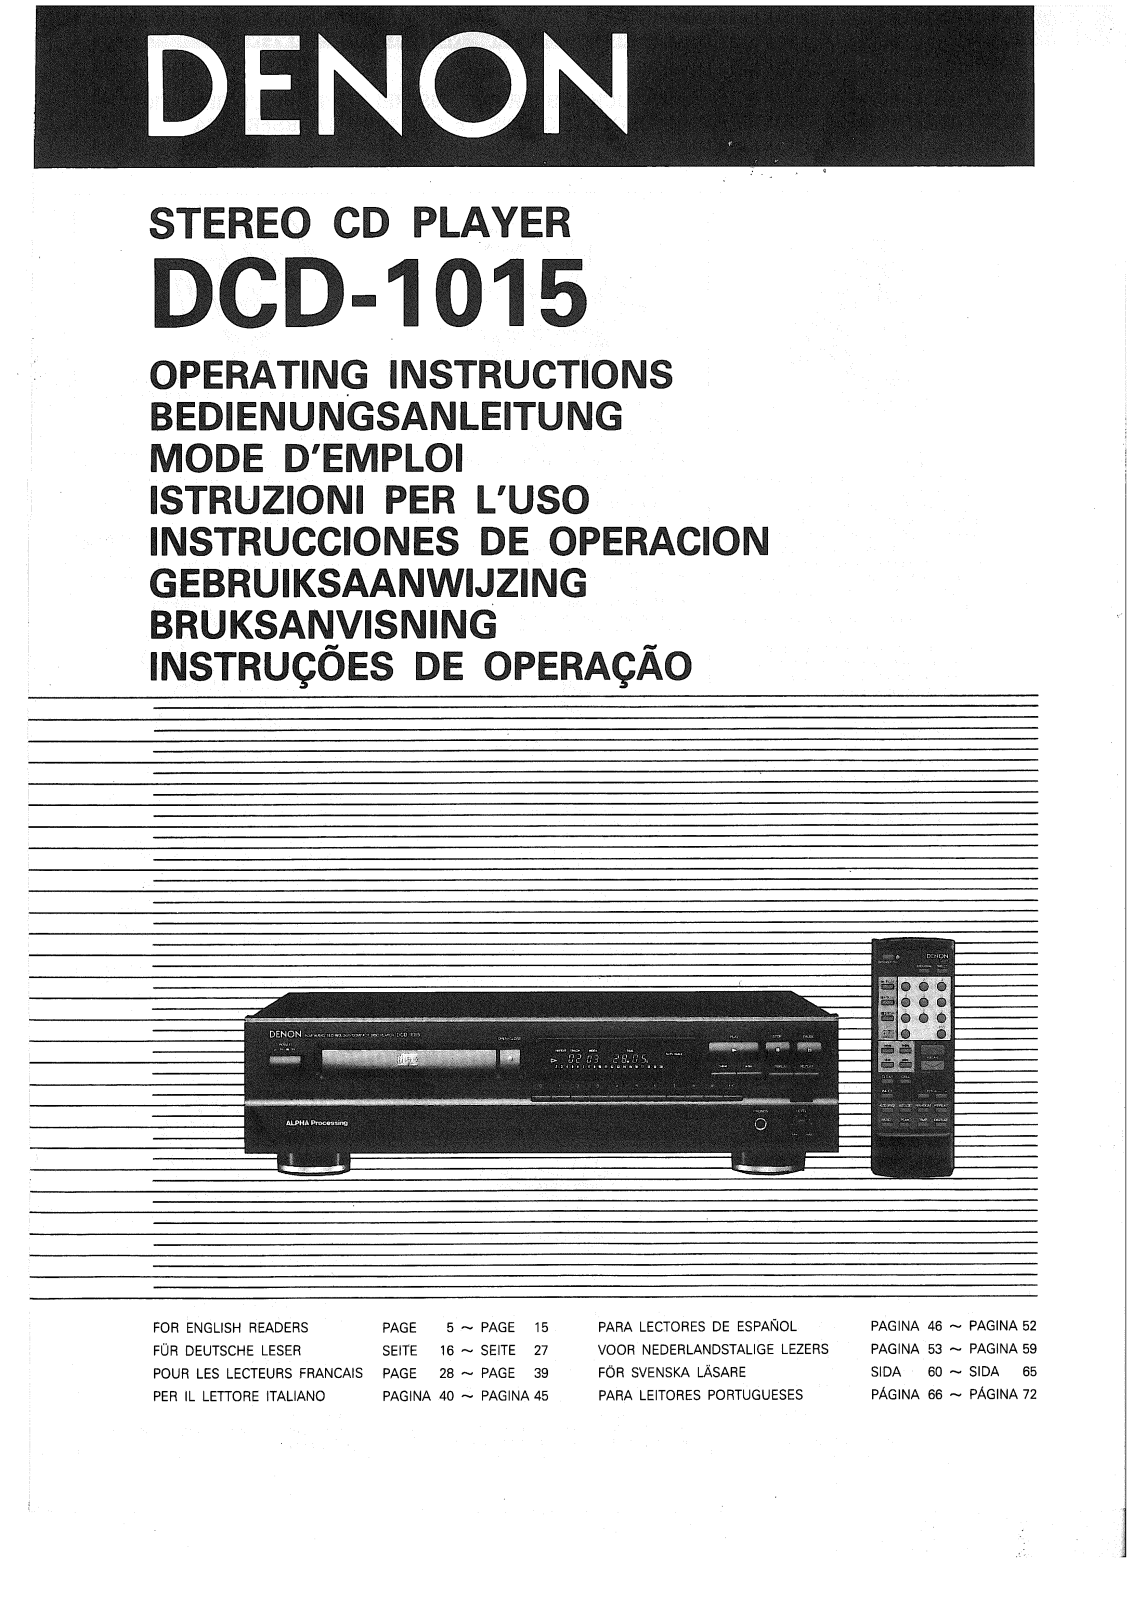 Denon DCD-1015 Owner's Manual